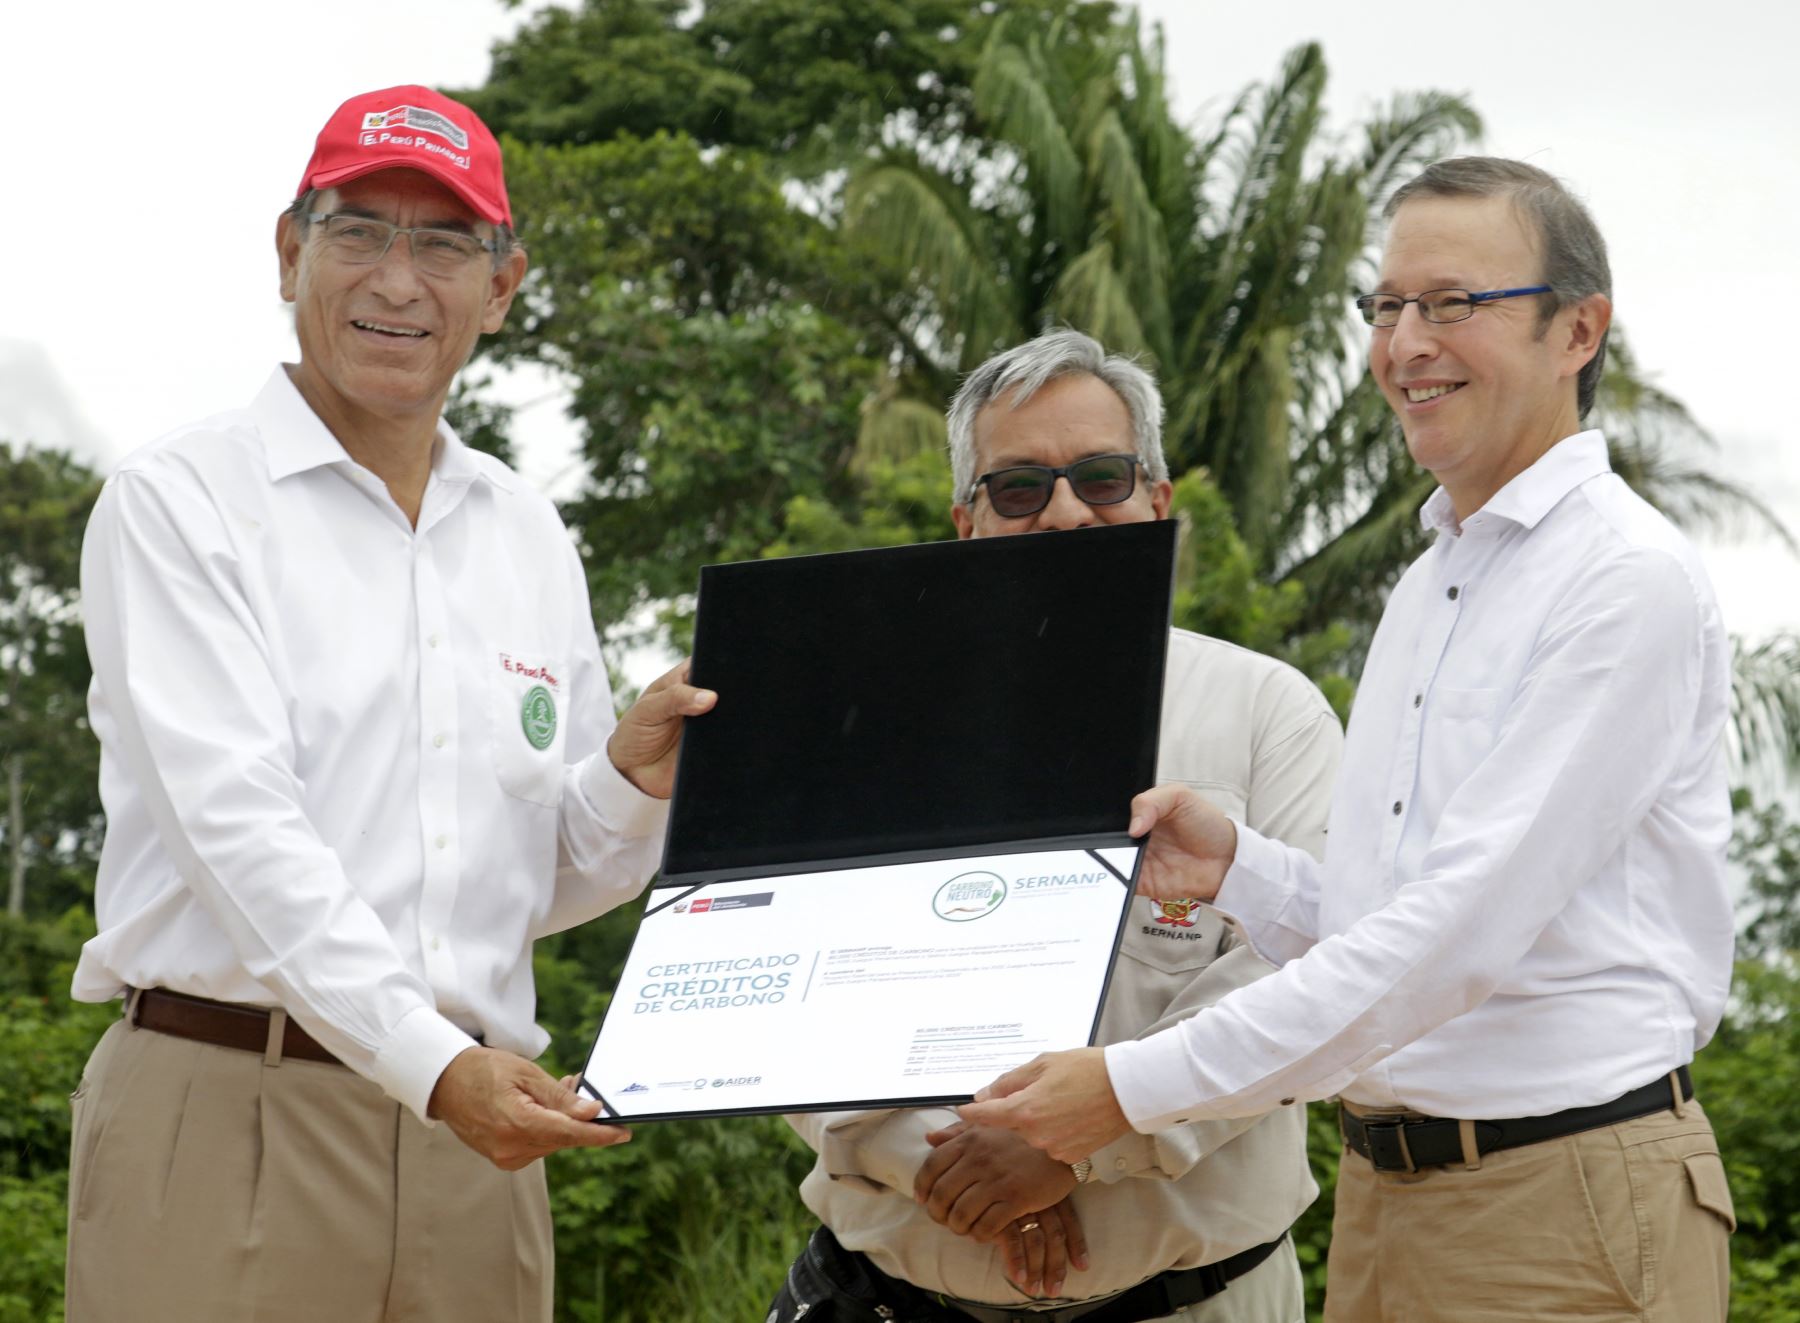 El Perú se convirtió en organizador de los primeros Juegos Verdes en la historia de estas competencias deportivas, gracias a la neutralización de su huella de carbono en áreas naturales protegidas.